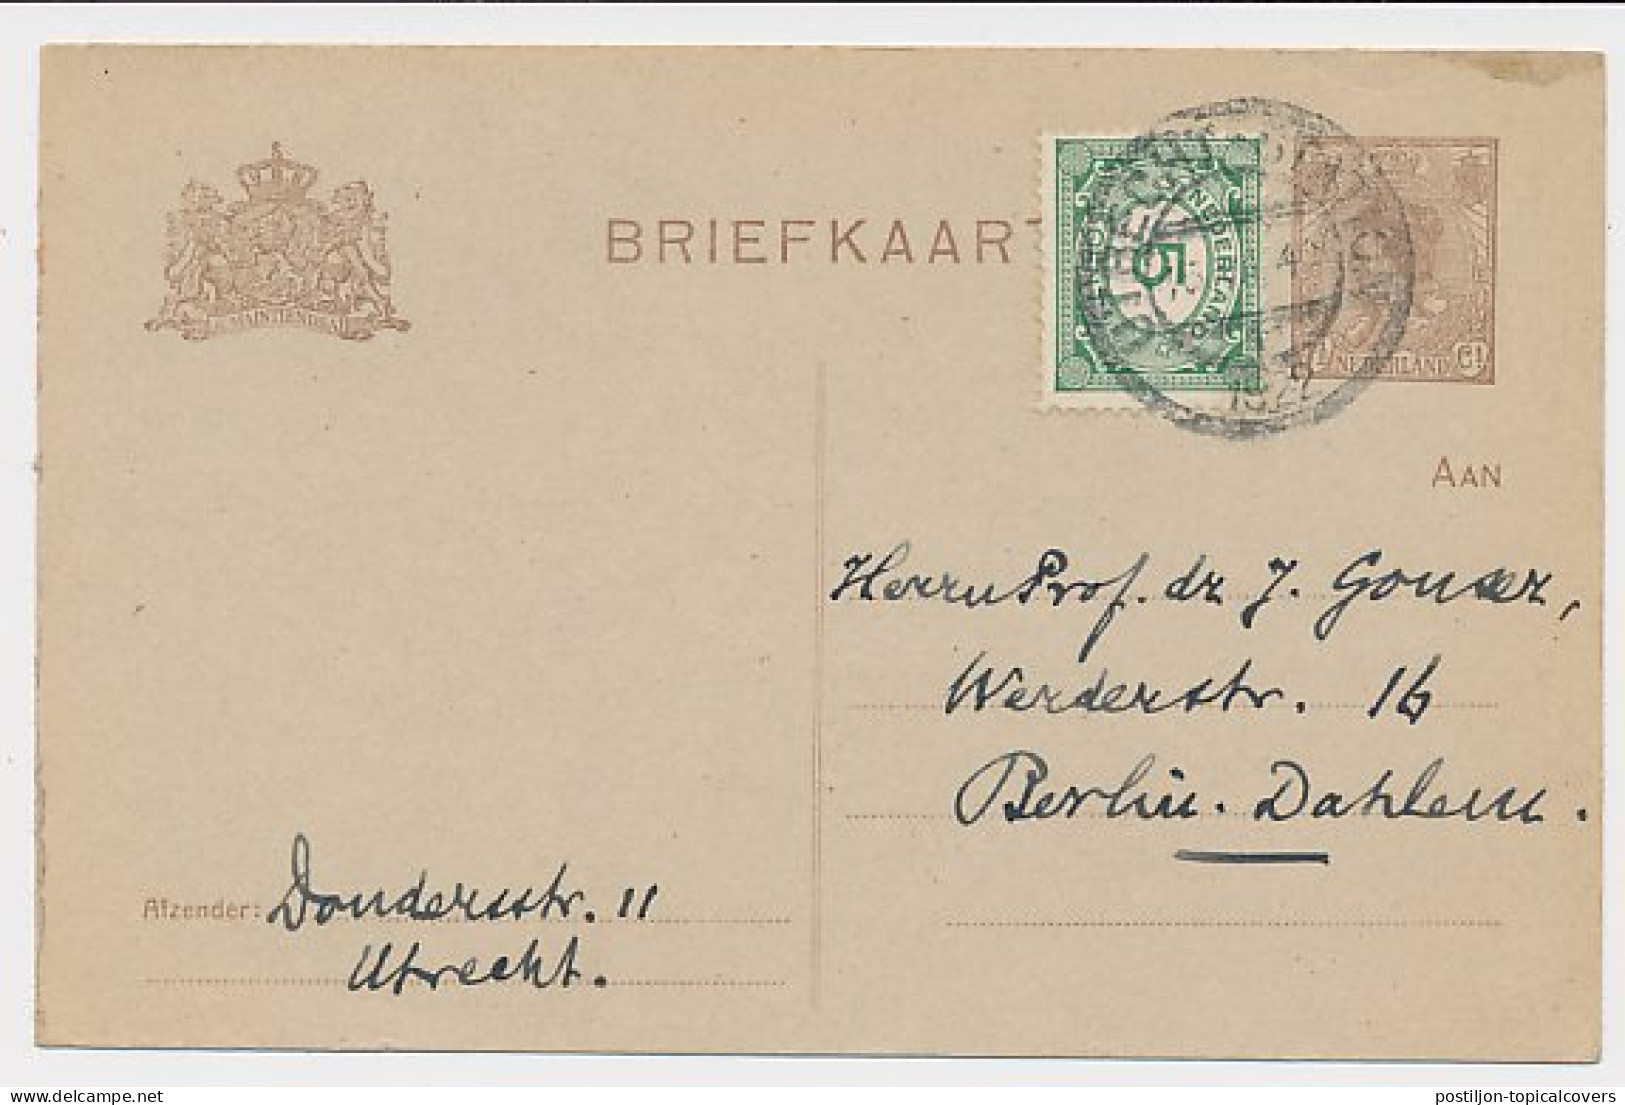 Briefkaart G. 191 I / Bijfrankering Utrecht - Duitsland 1922 - Entiers Postaux